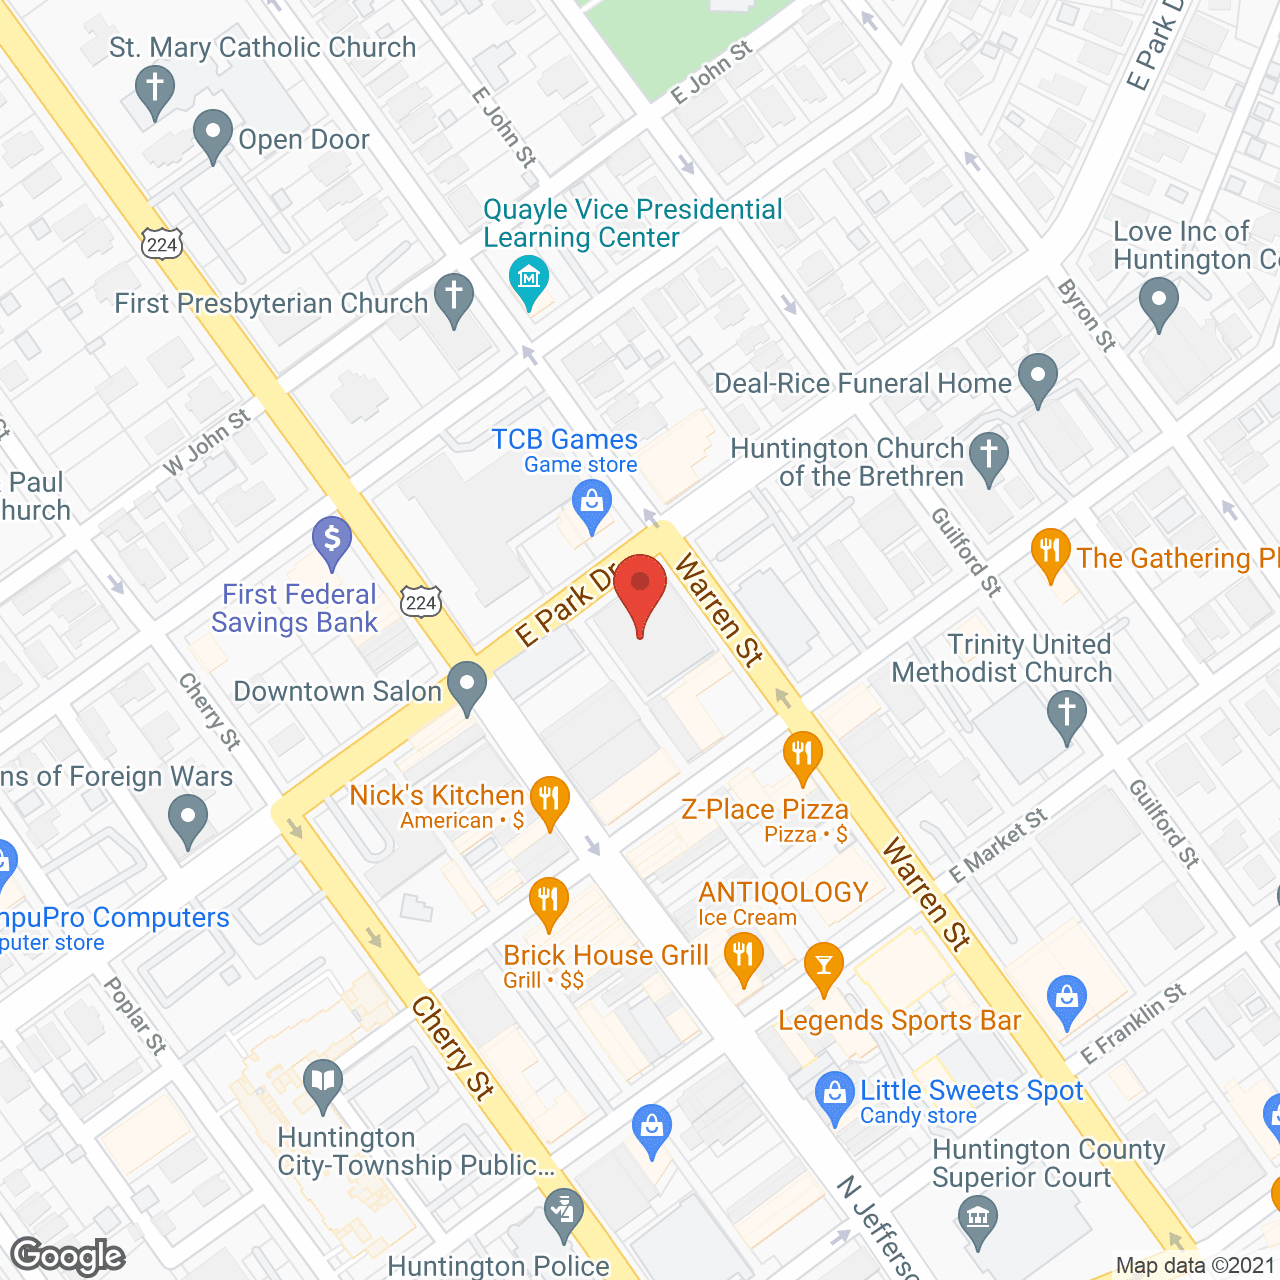 Park Lofts at Huntington in google map